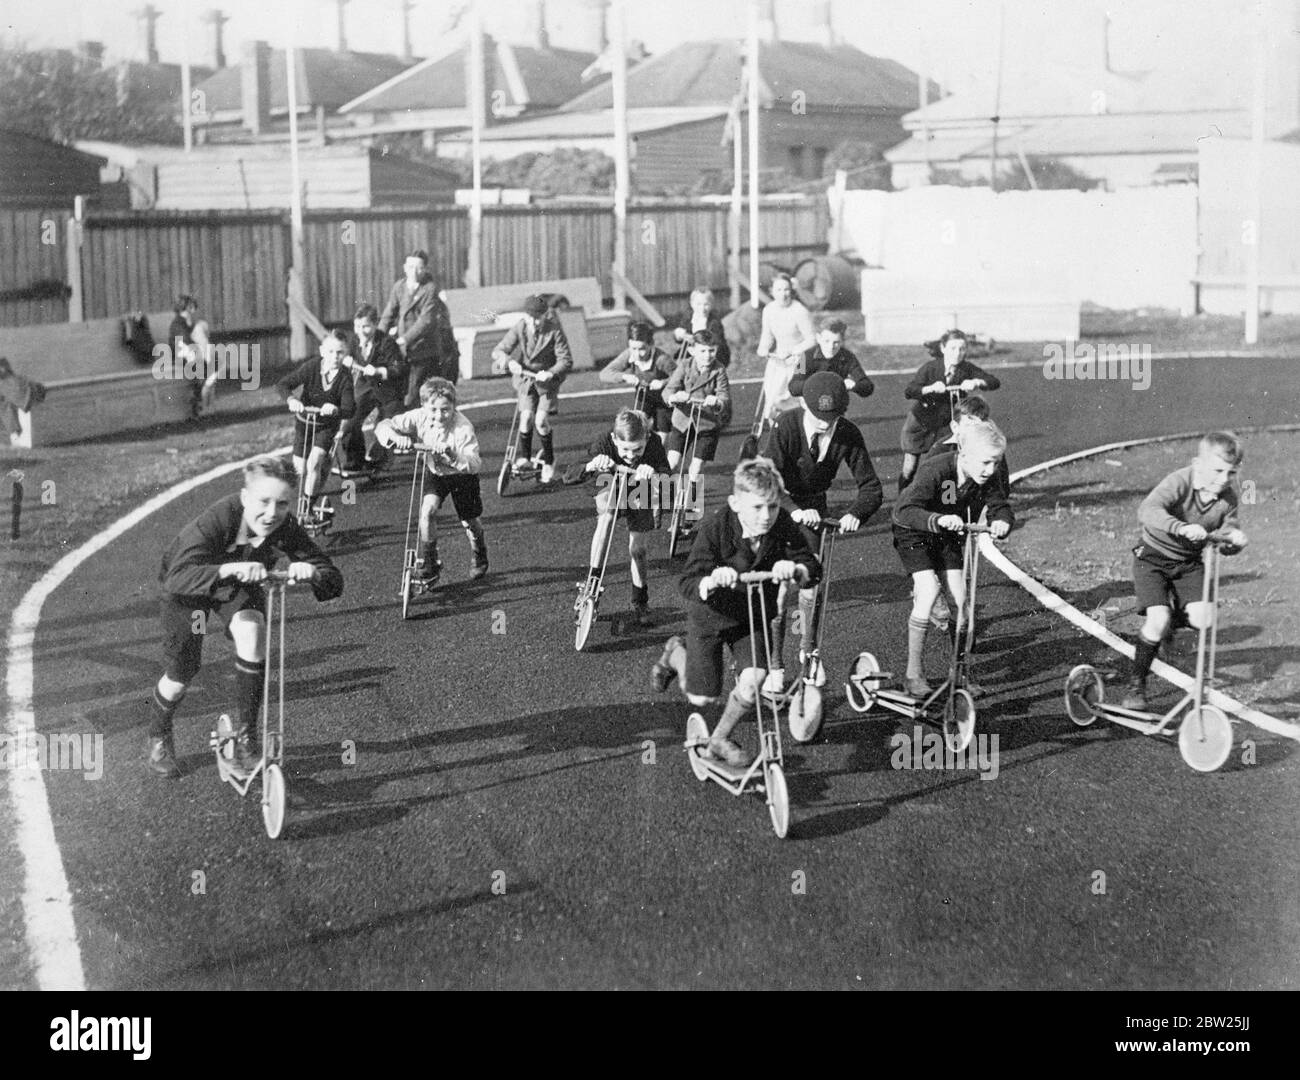 Roller Rennbahn kommt mit großen Revival. So schnell und vollständig ist die Rückkehr zur Popularität des Scooters in Melbourne, Australien, dass eine spezielle Scooter-Rennstrecke gebaut wurde. Für Kinder im Alter von 4 bis 40 Jahren finden regelmäßig Rennen statt. Foto zeigt, ein Rennen in Gang auf der Scooter-Strecke in Melbourne. 29. Januar 1938 Stockfoto